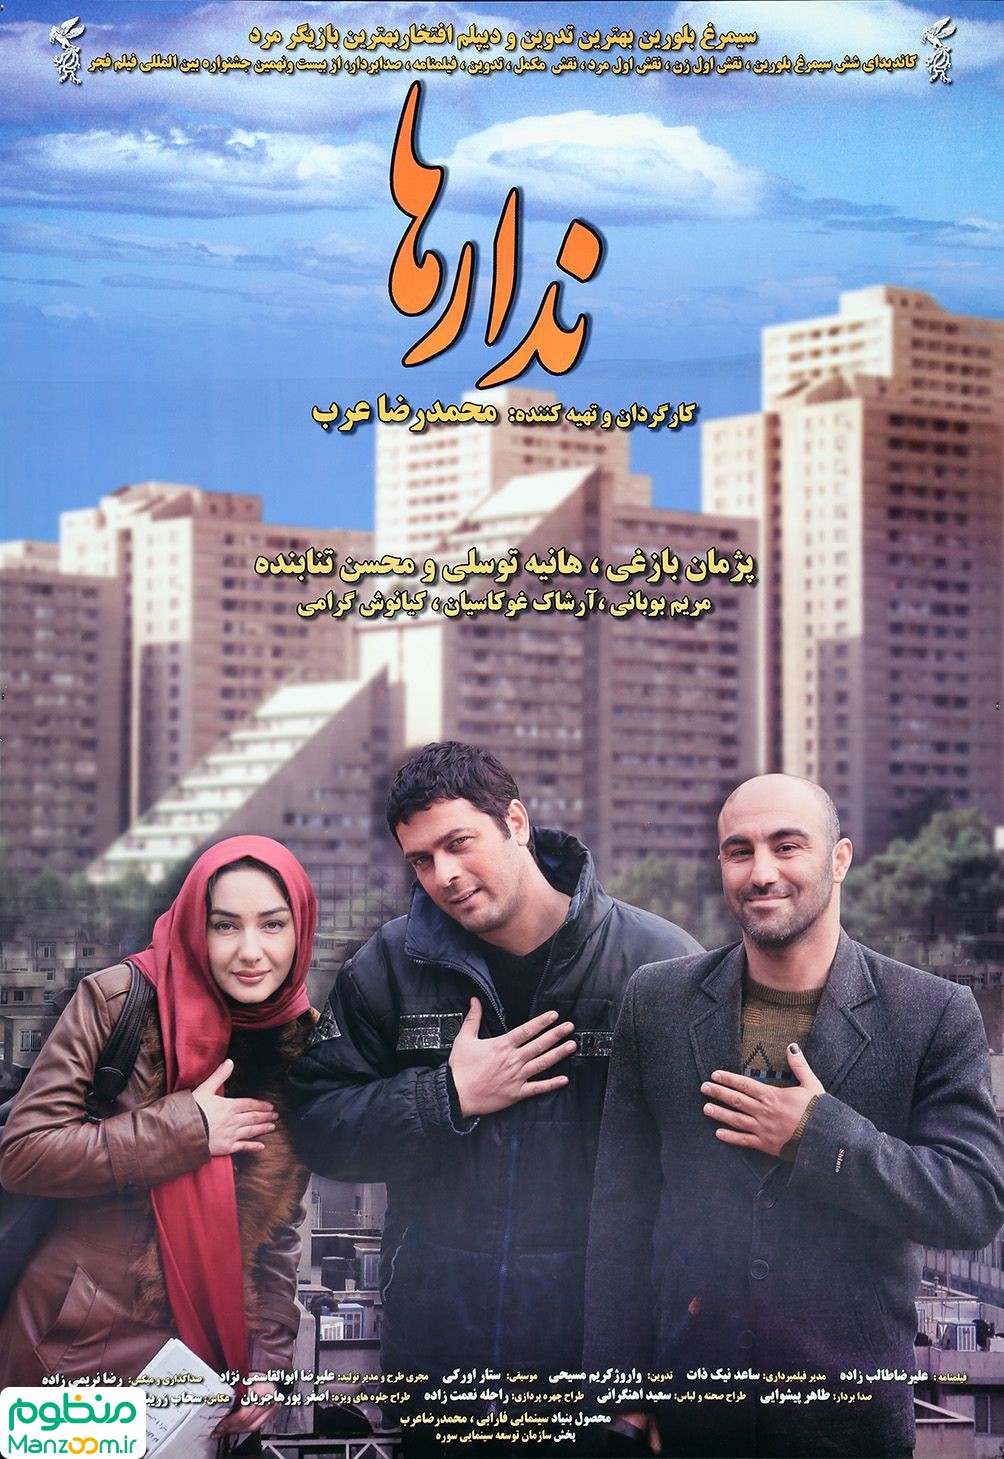  فیلم سینمایی ندارها به کارگردانی محمدرضا عرب